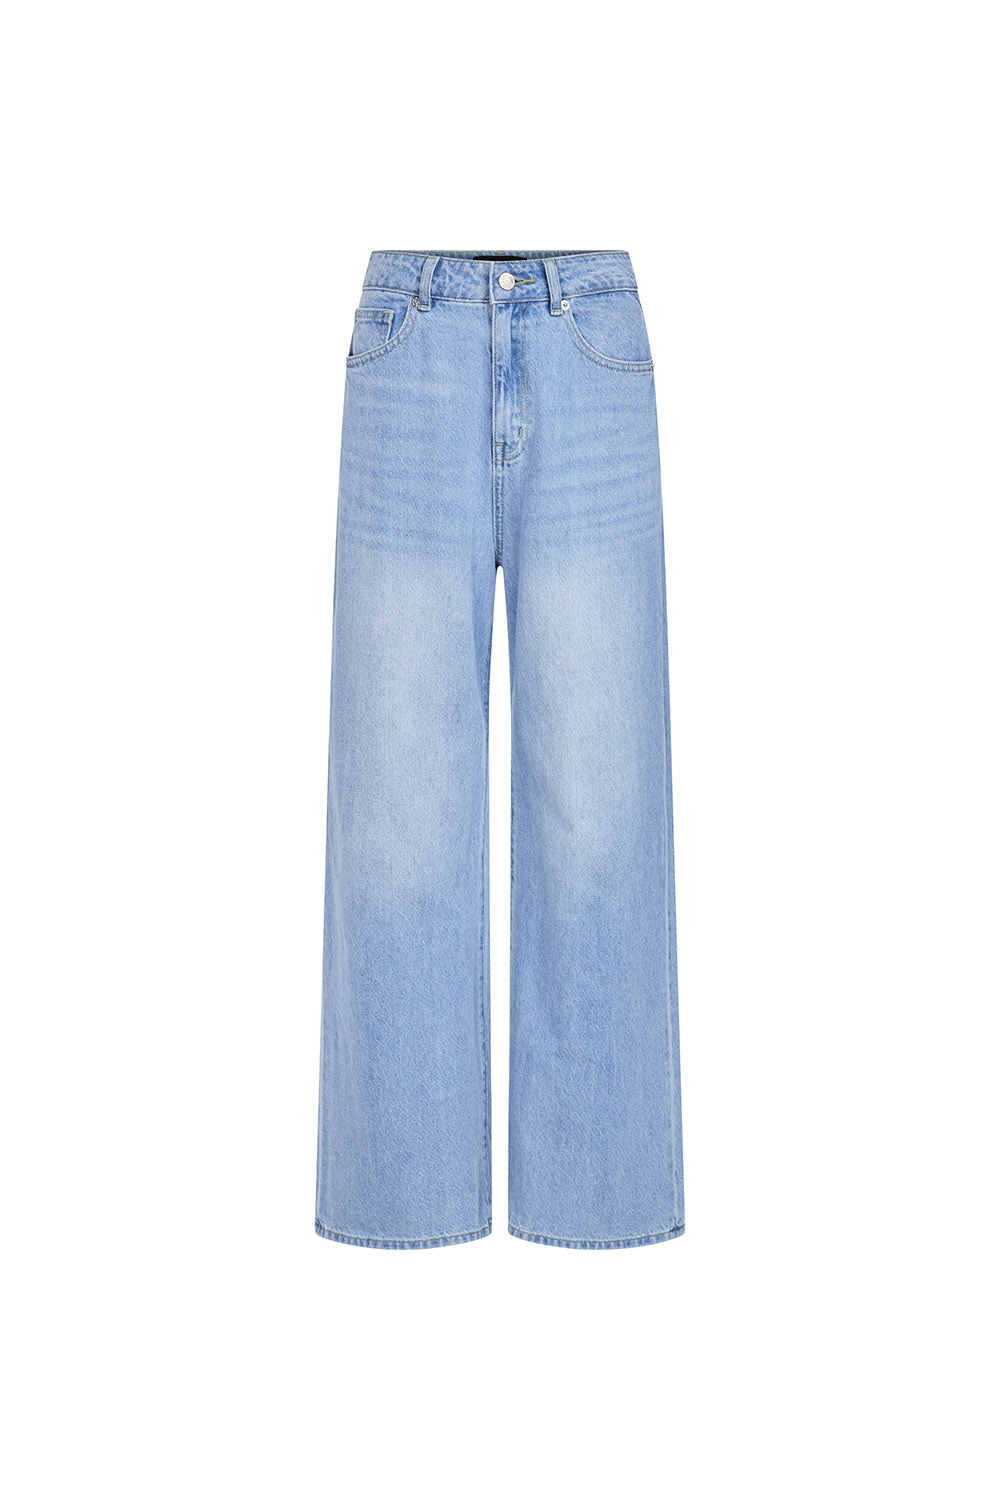 DOTTIE - Quần jeans dài ống rộng - Xanh nhạt - Q0310